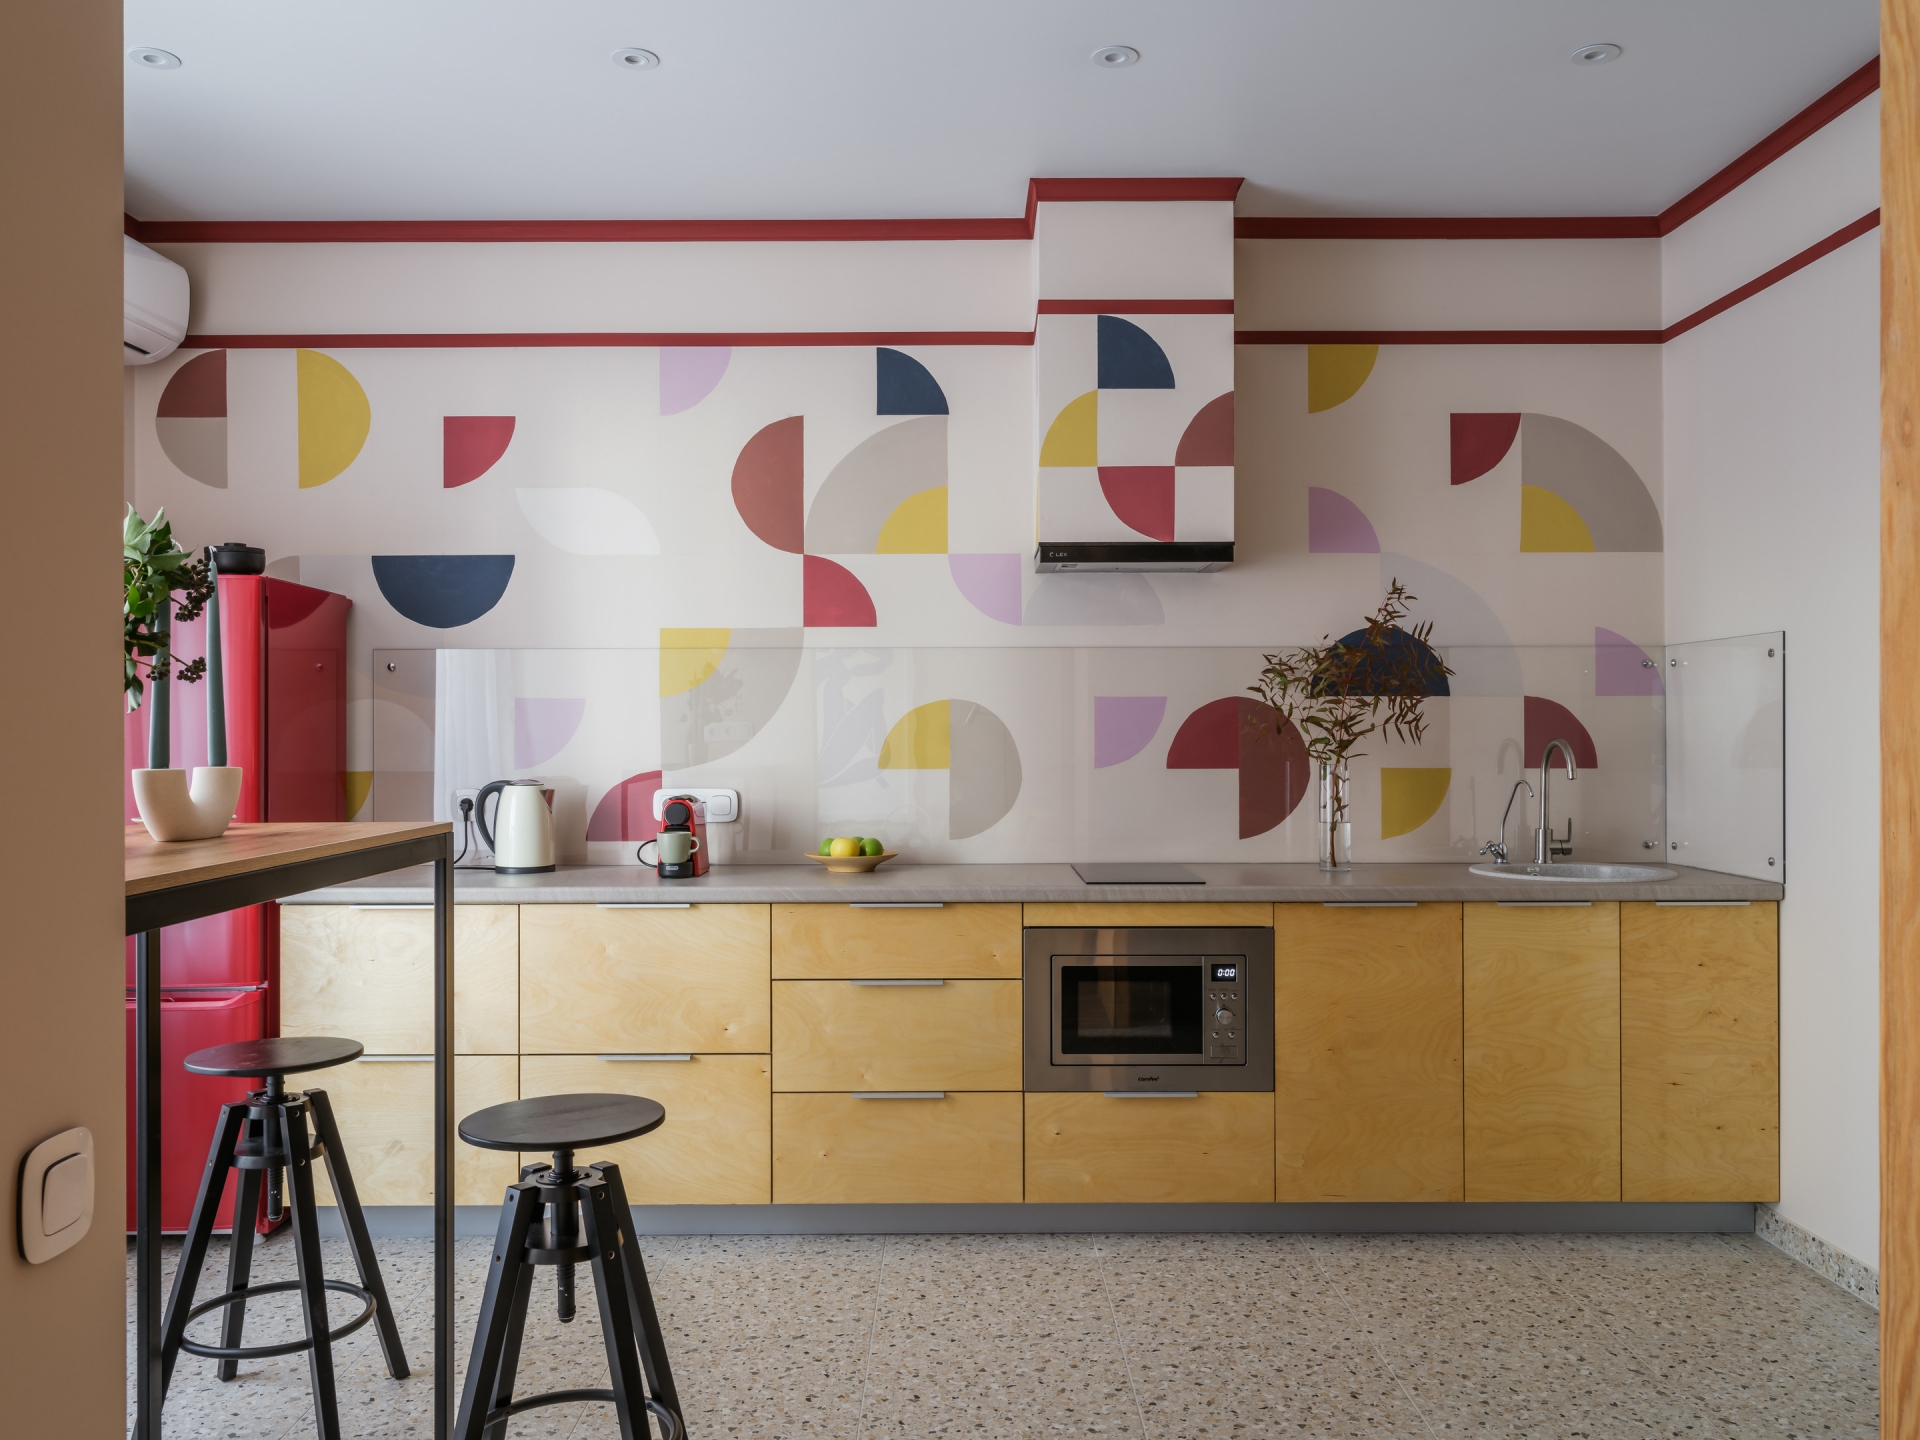 Phòng bếp xinh xắn và trẻ trung với họa tiết hình học trang trí tường cũng như khu vực backsplash đầy màu sắc. Và hẳn bạn sẽ cảm thấy thú vị khi xung quanh hệ thống hút mùi cũng được 'khoác áo mới' đúng không nào?